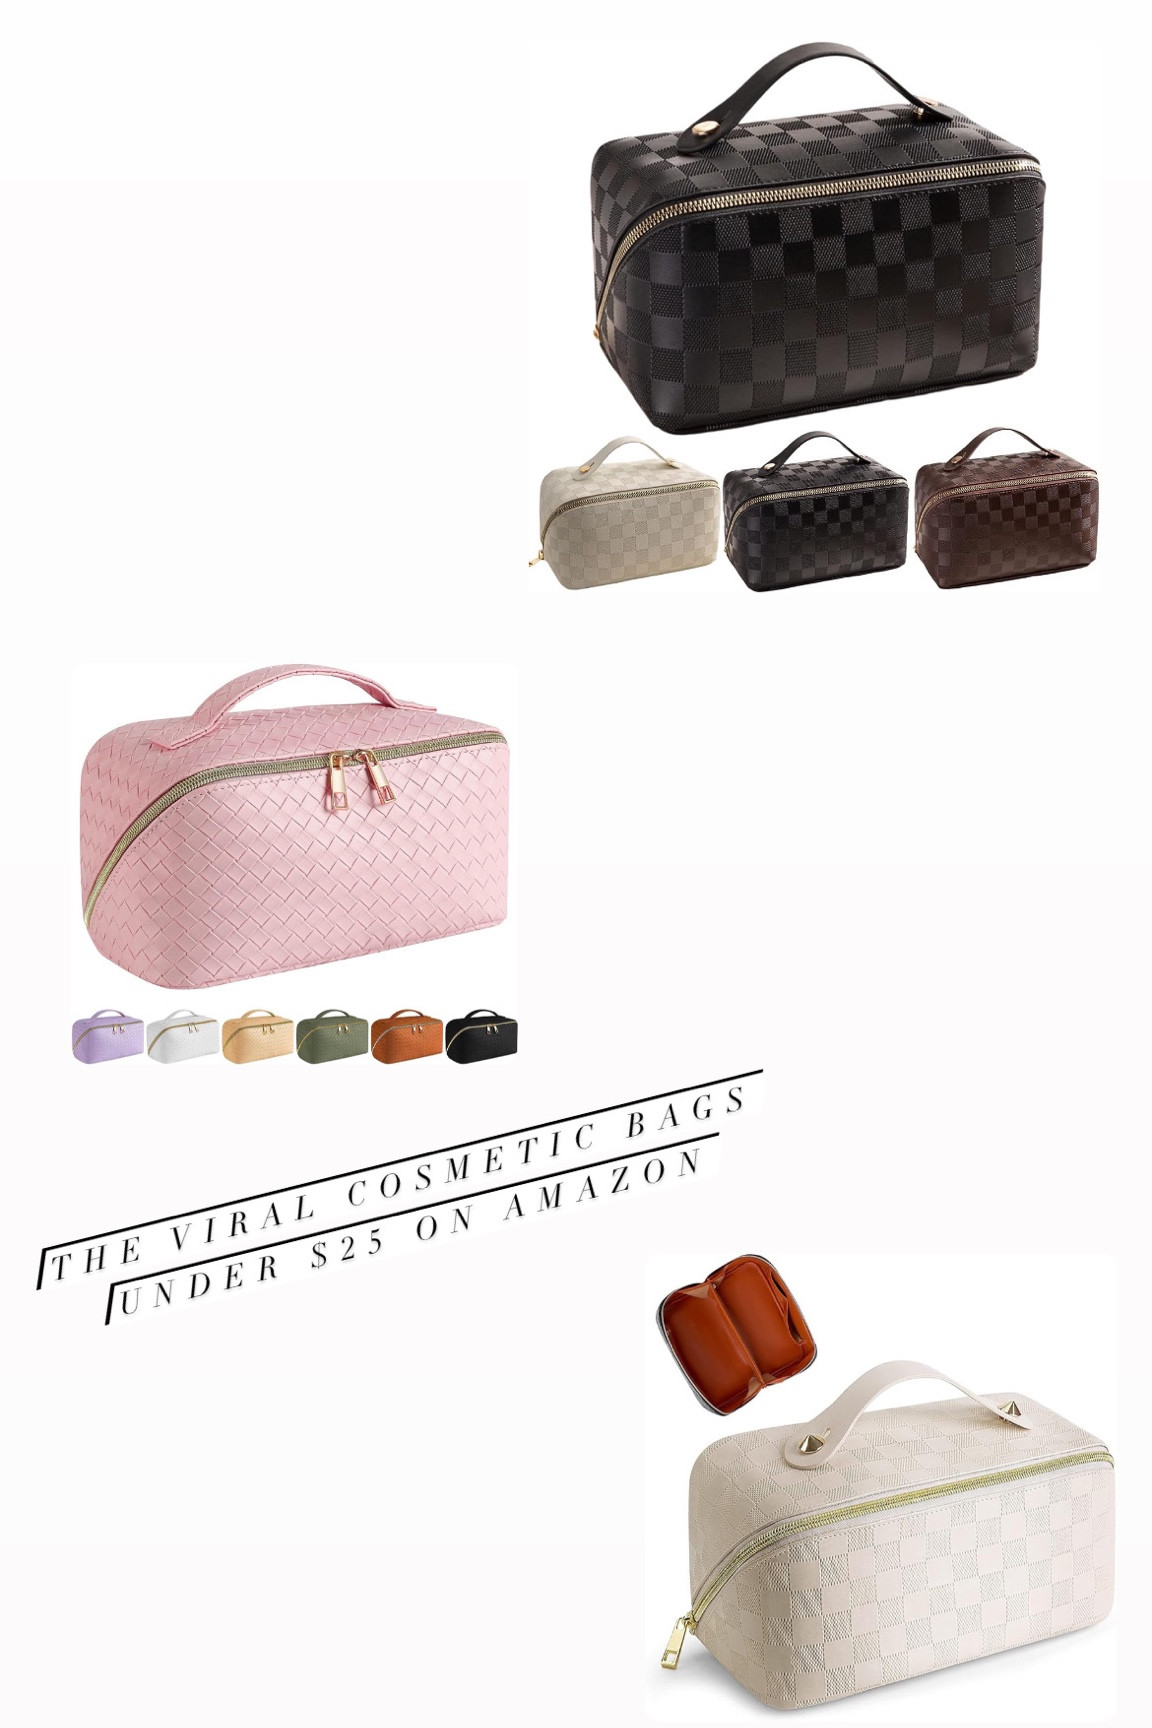  BIVIZKU Large Capacity Makeup Bags Portable Travel